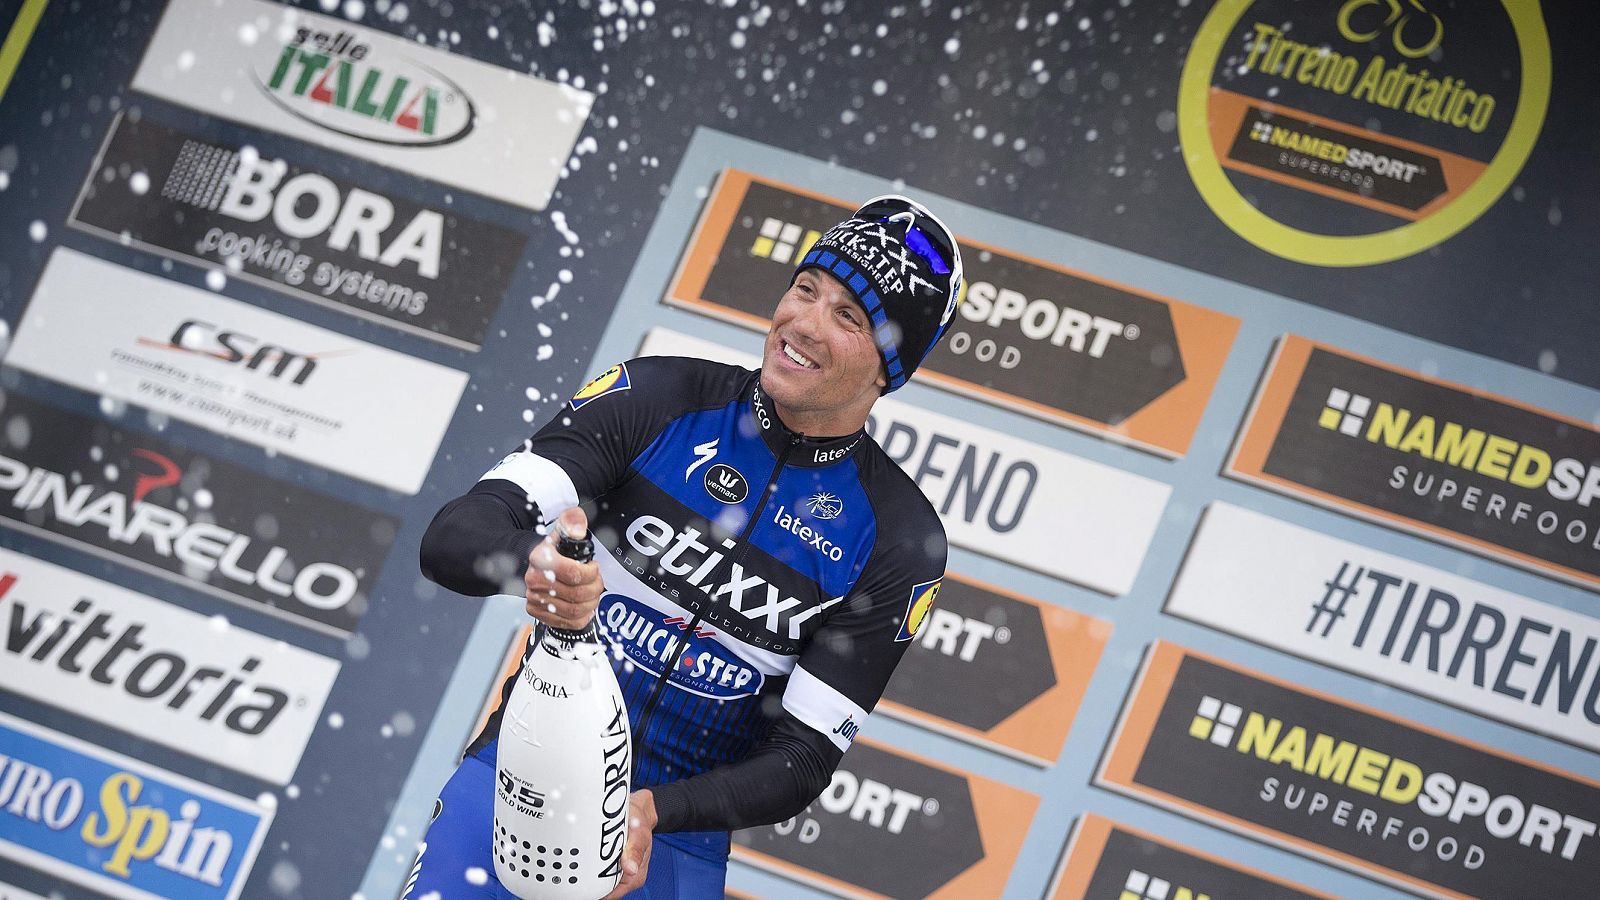 El checo Zdnek Stybar sigue líder de la Tirreno-Adriático